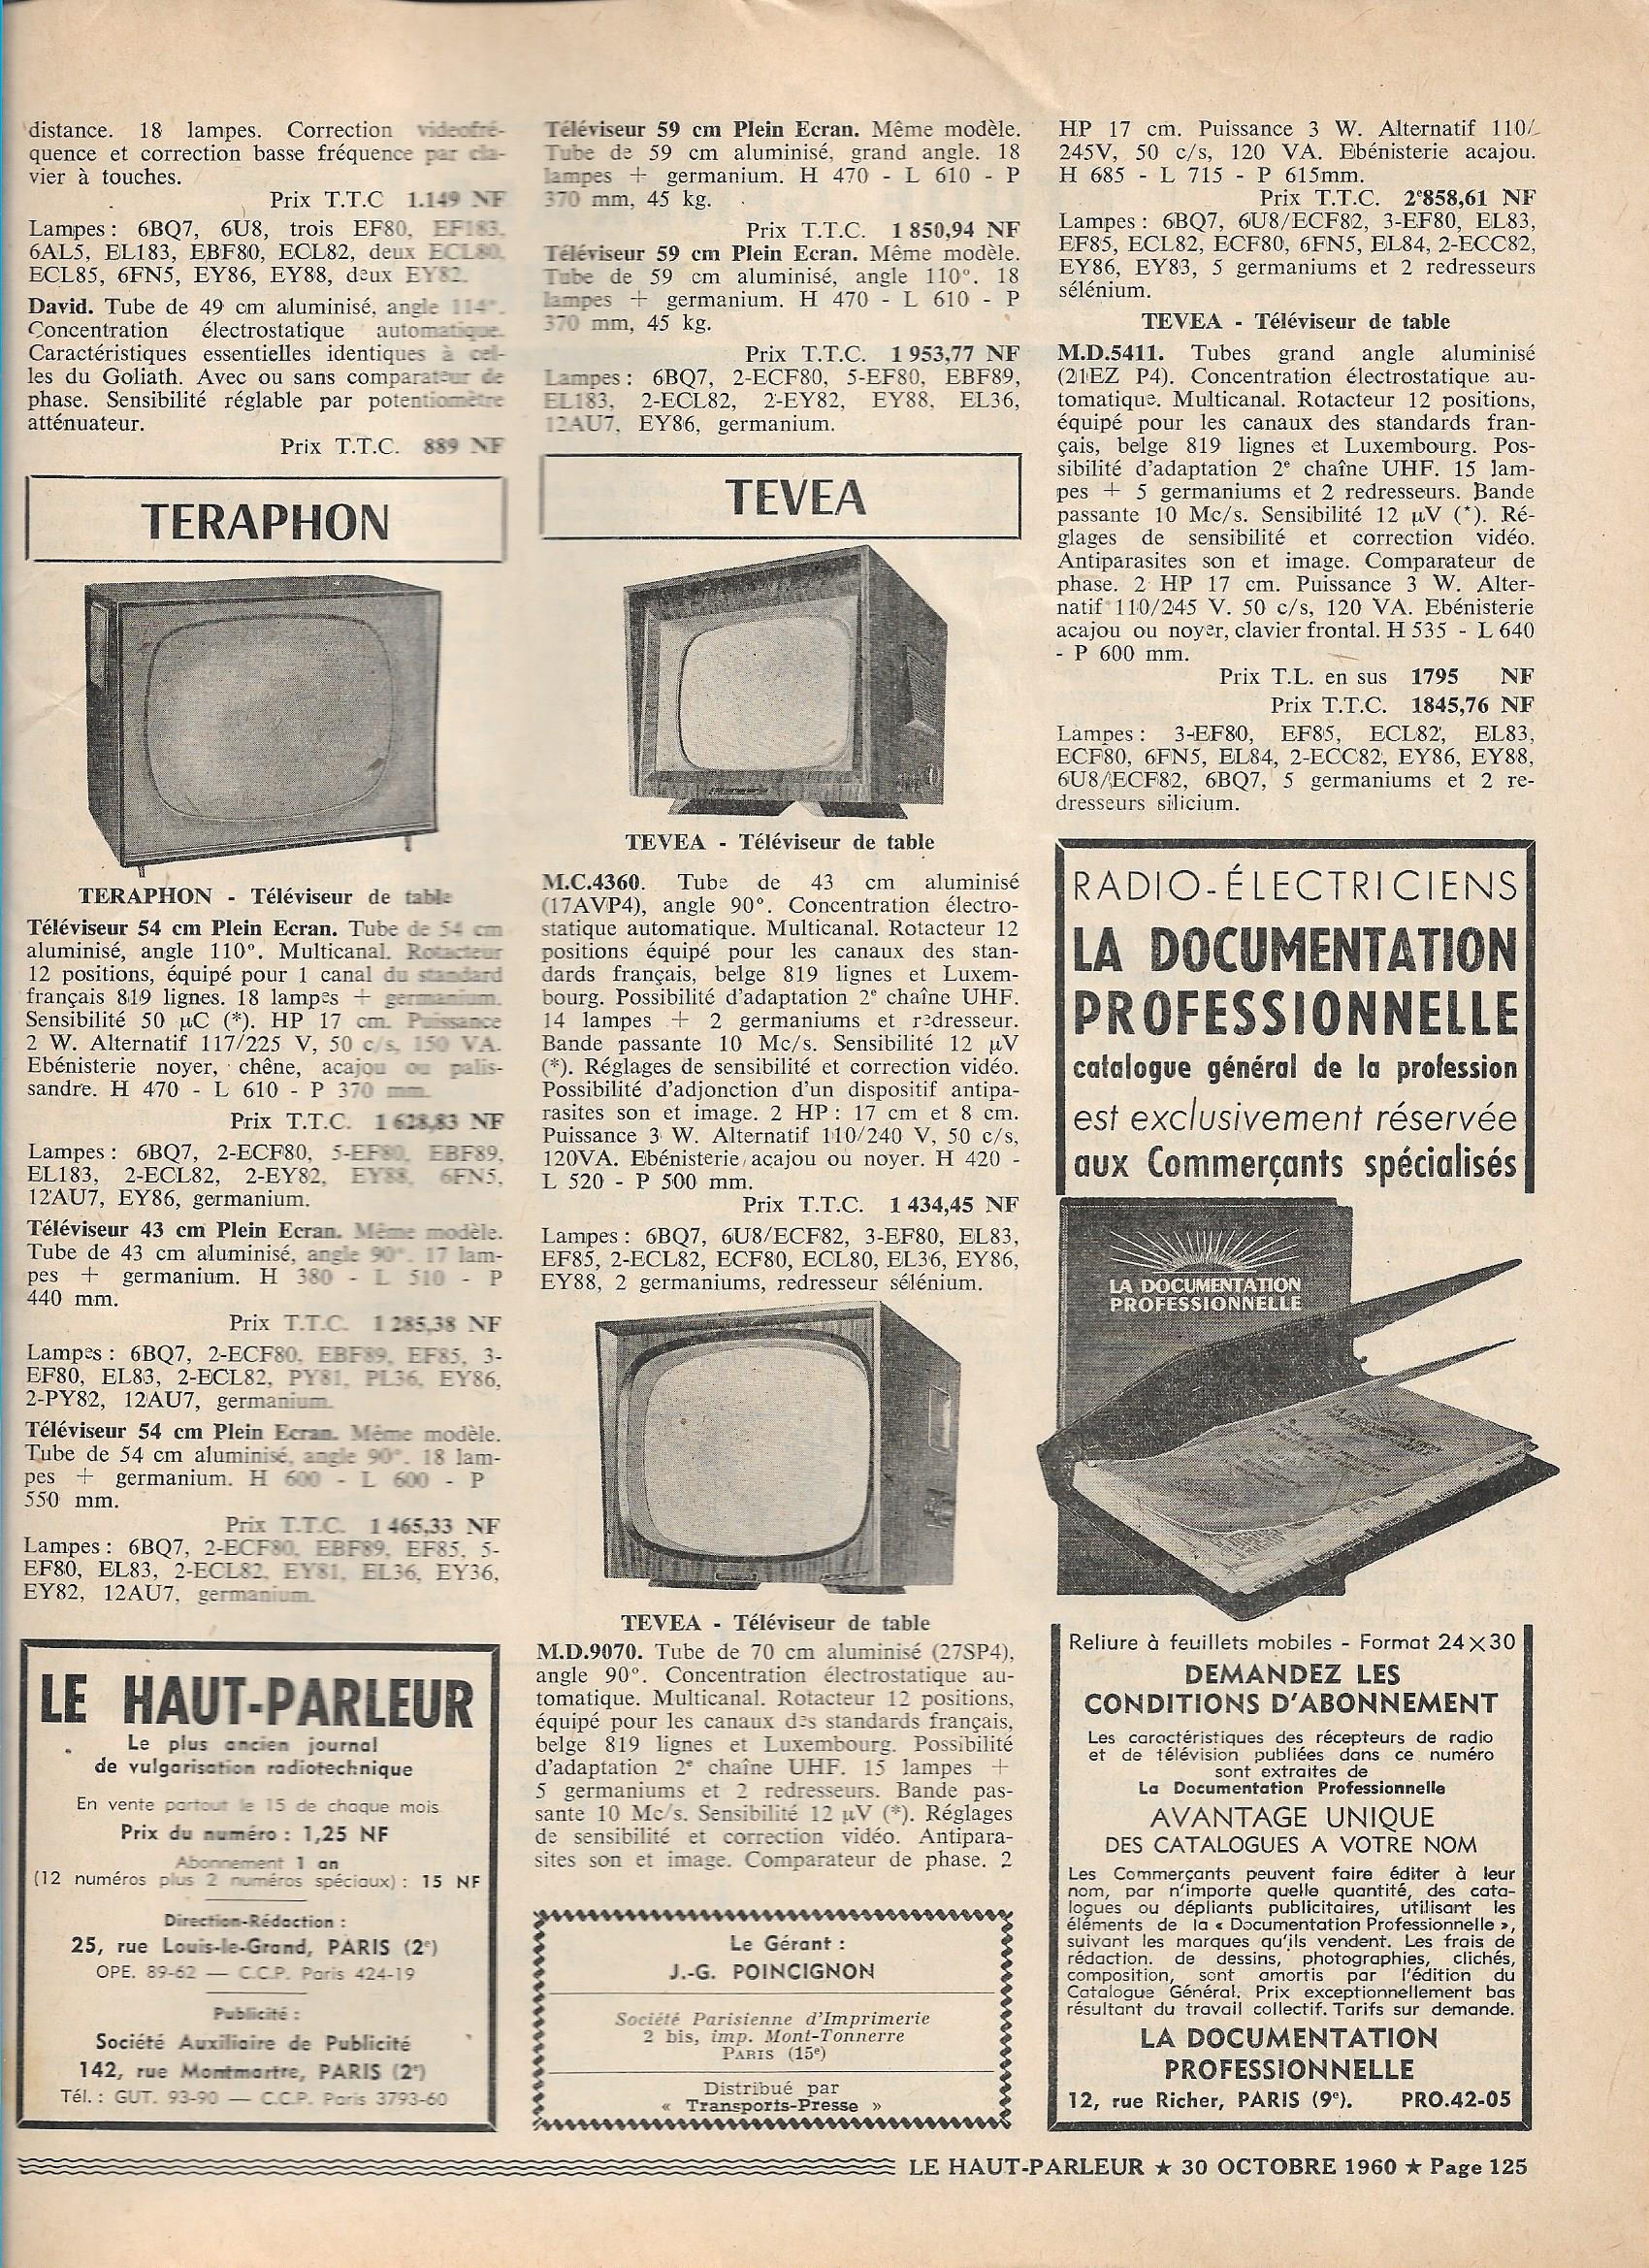 Téléviseur TEVEA 1959 - Télévision/vidéo - Forum Retrotechnique